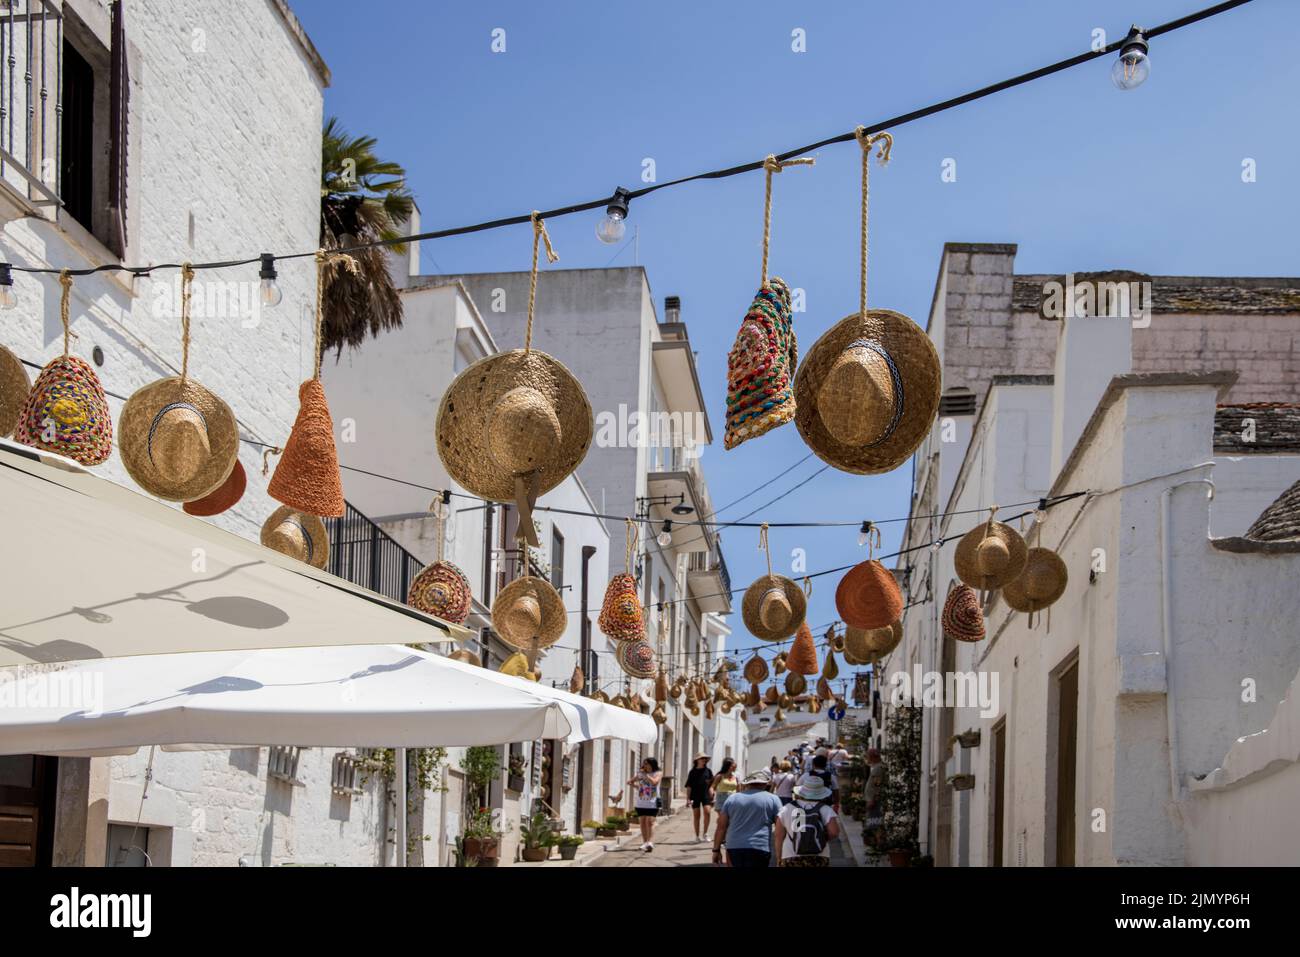 sombreros cubren 0ne de las principales calles de locorotondo, una ciudad de puglia, italia, famosa por sus casas de trulli circulares en forma de cono Foto de stock